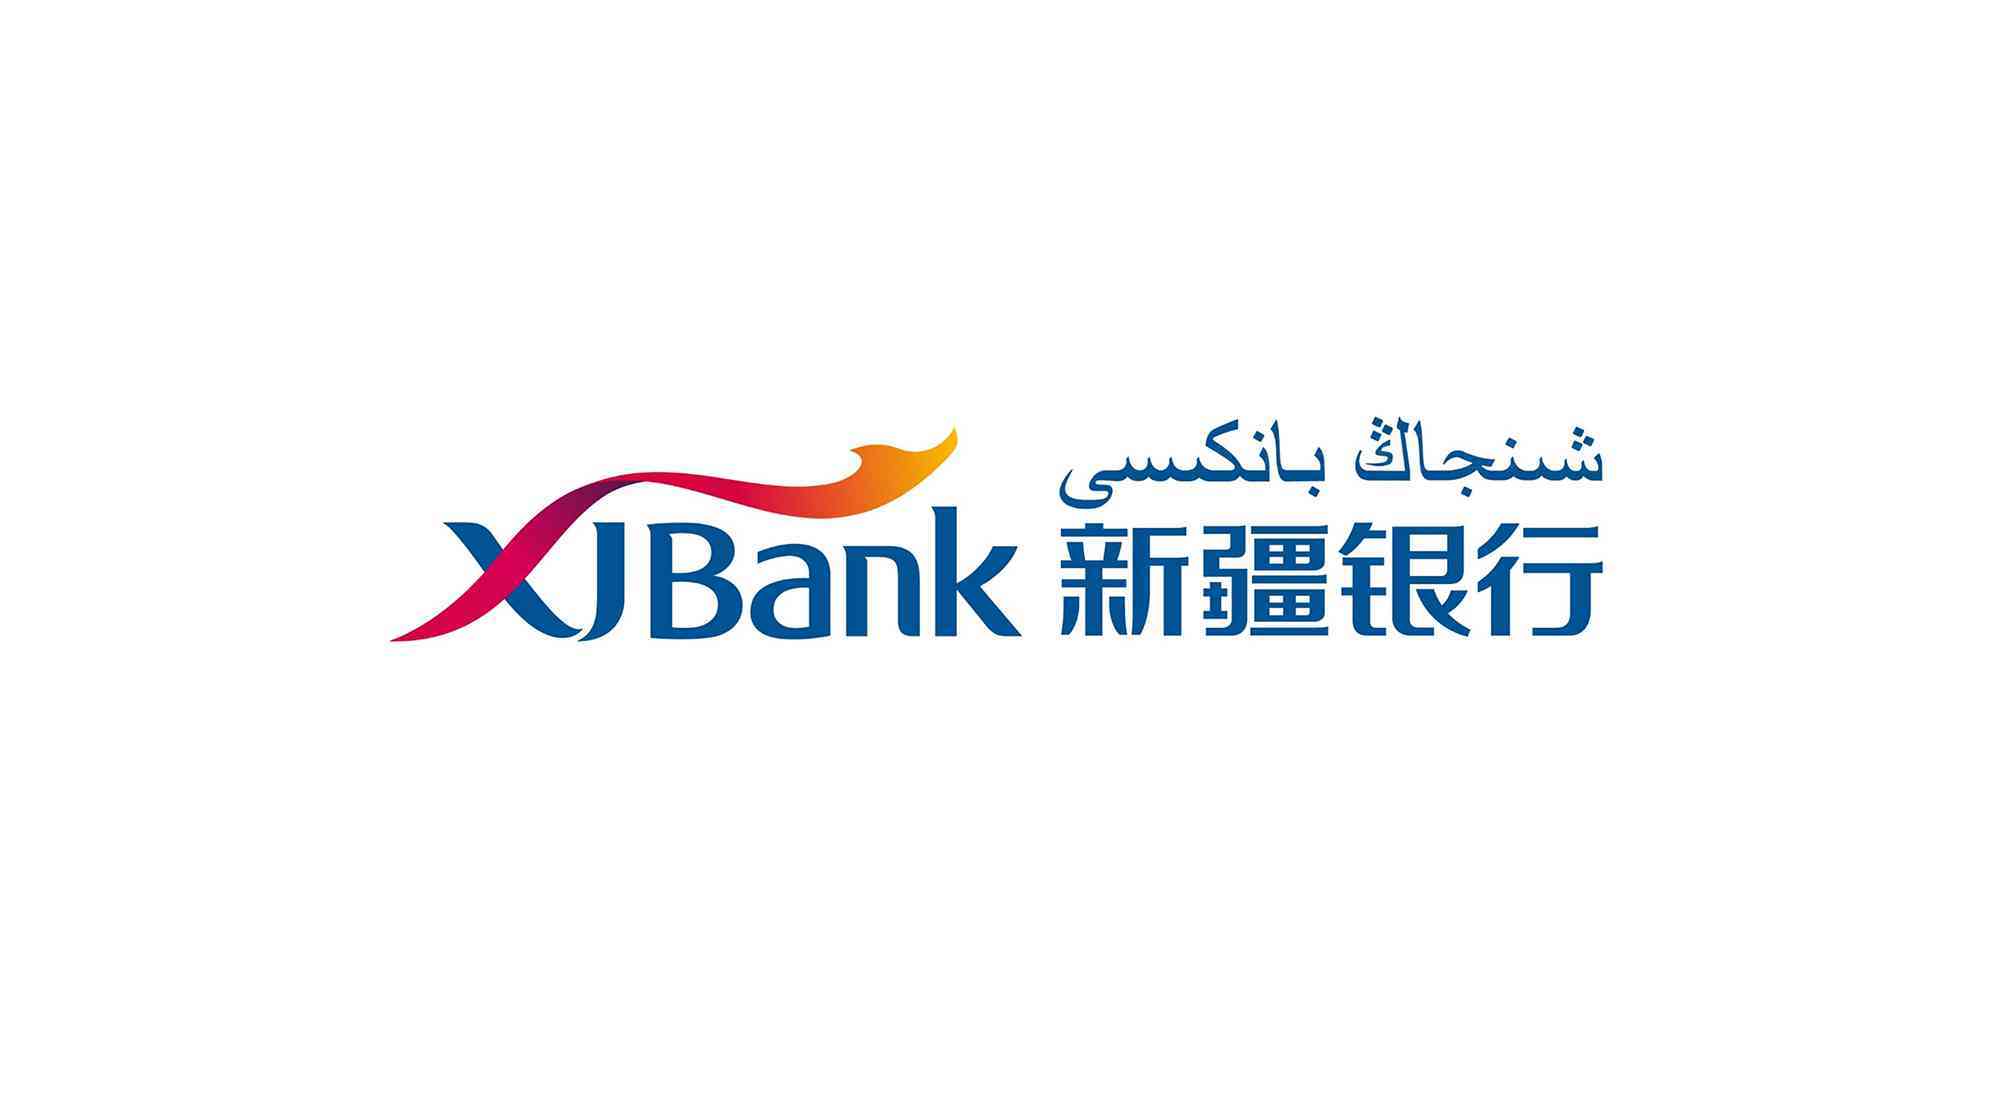 新疆银行vi设计图片素材